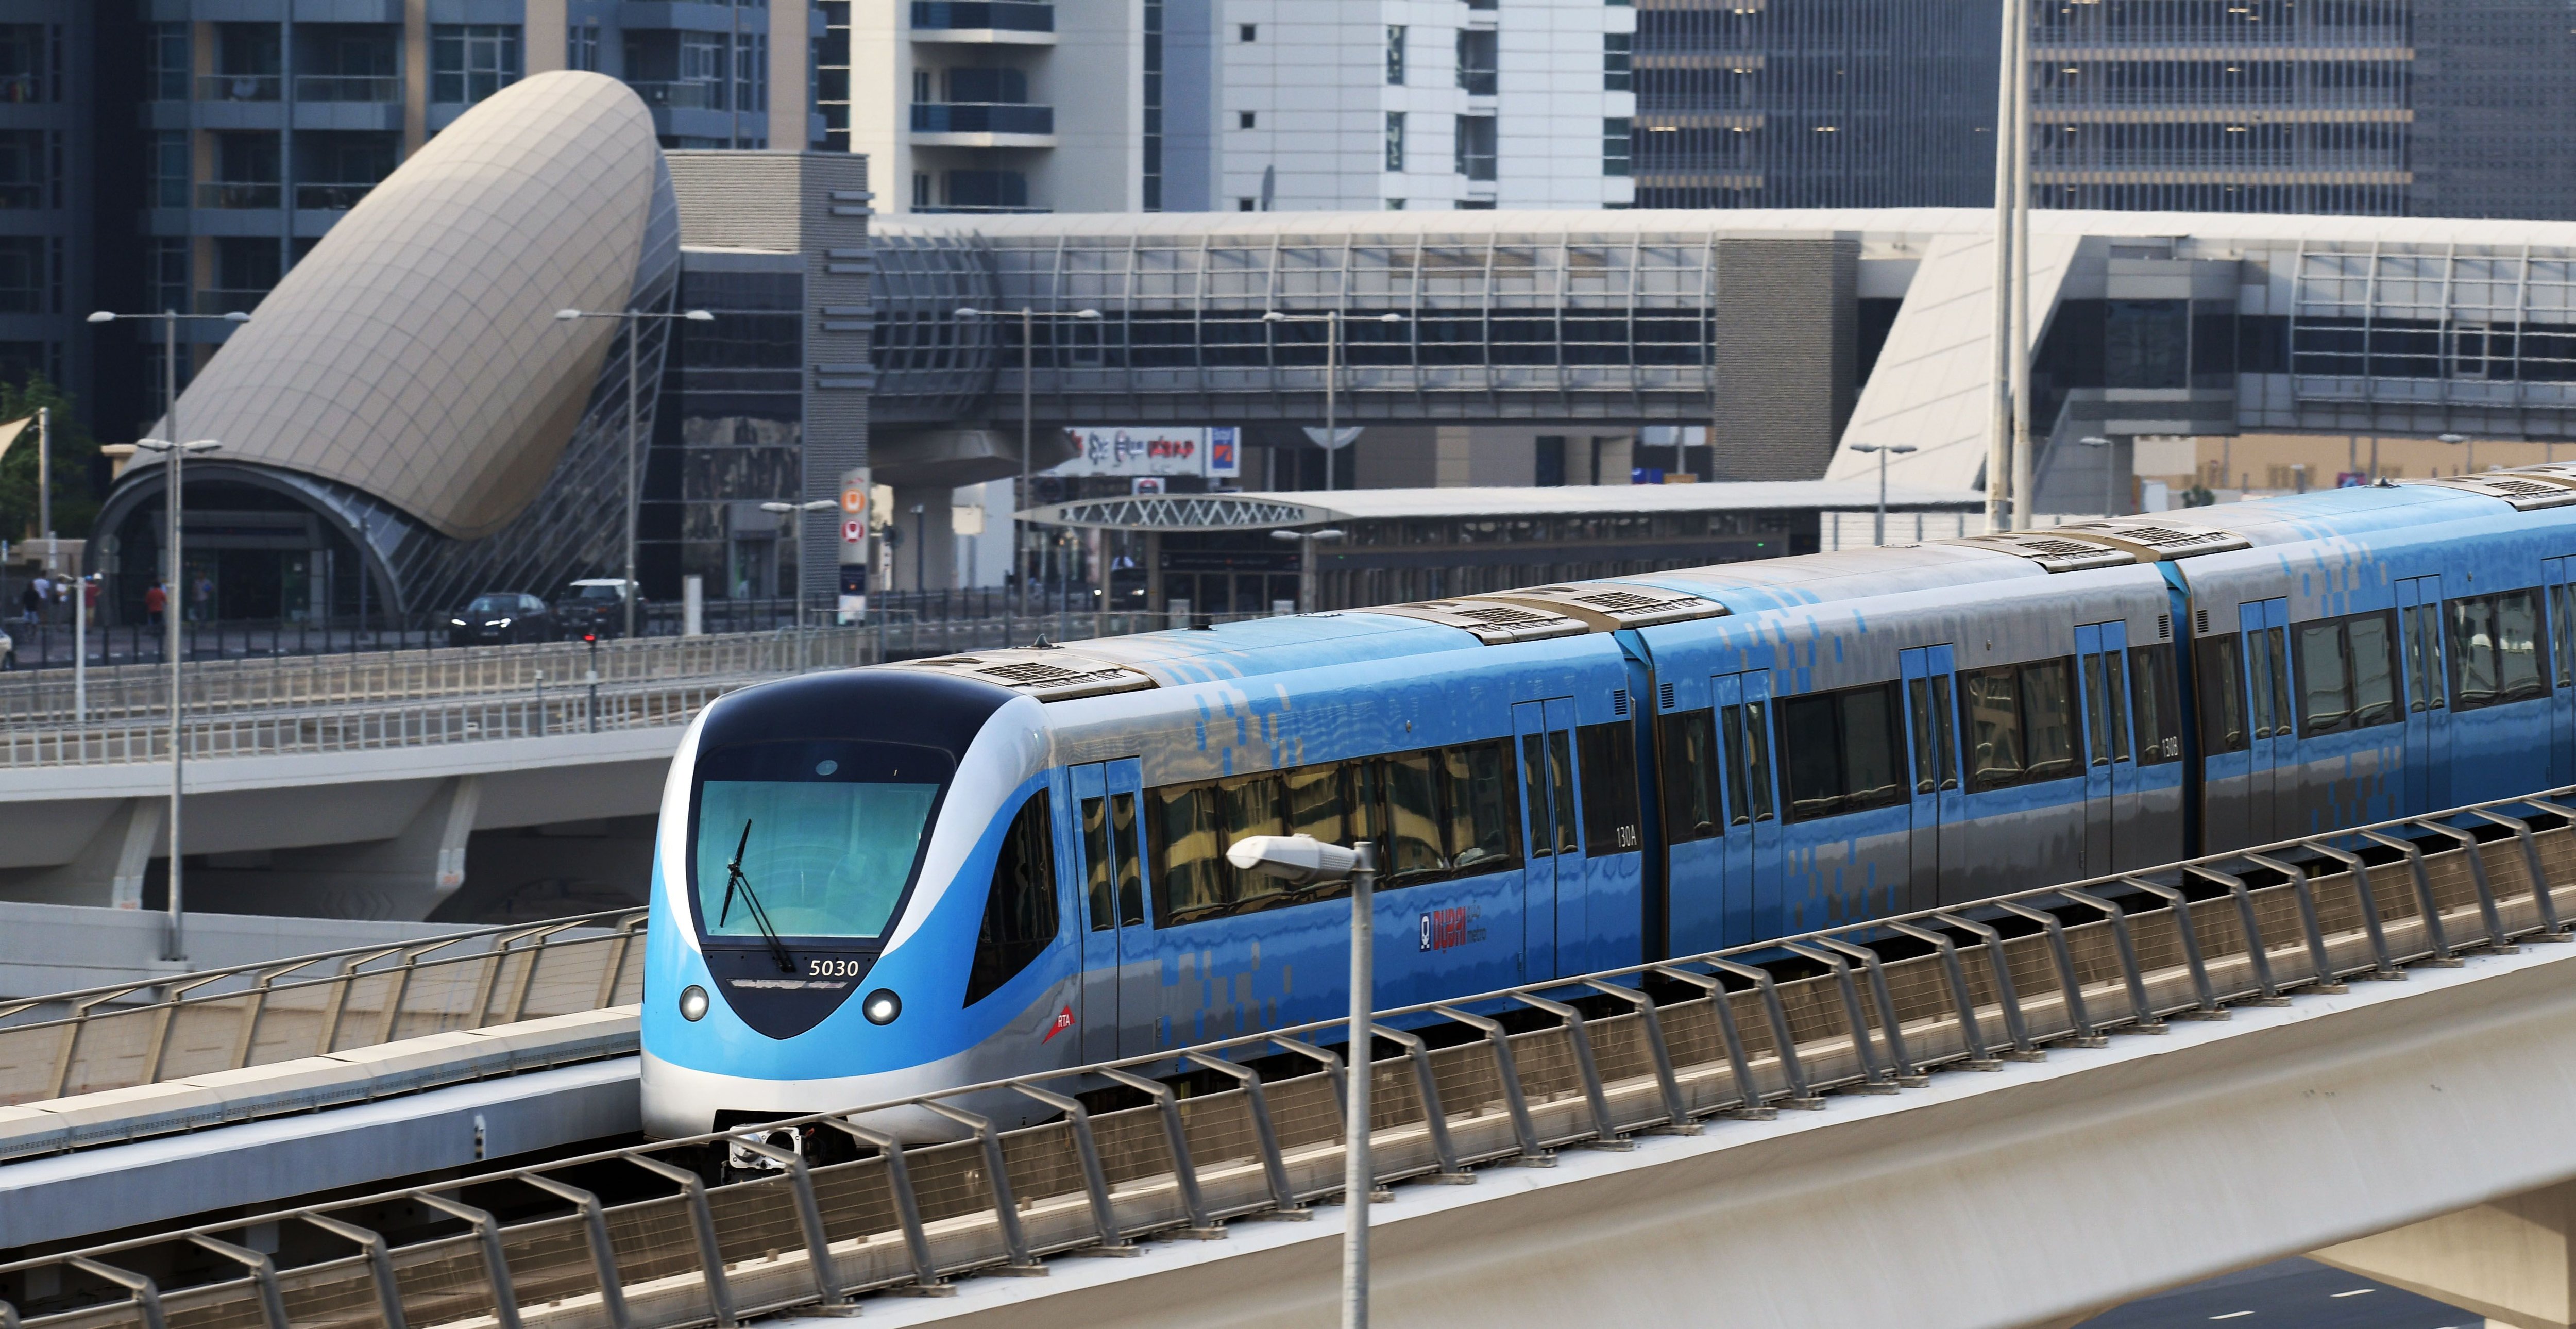 Le métro automatique de Dubai est opéré par Keolis depuis 2021 avec Mitsubishi. Le groupe français s'est imposé comme leader mondiale sur les lignes automatiques.